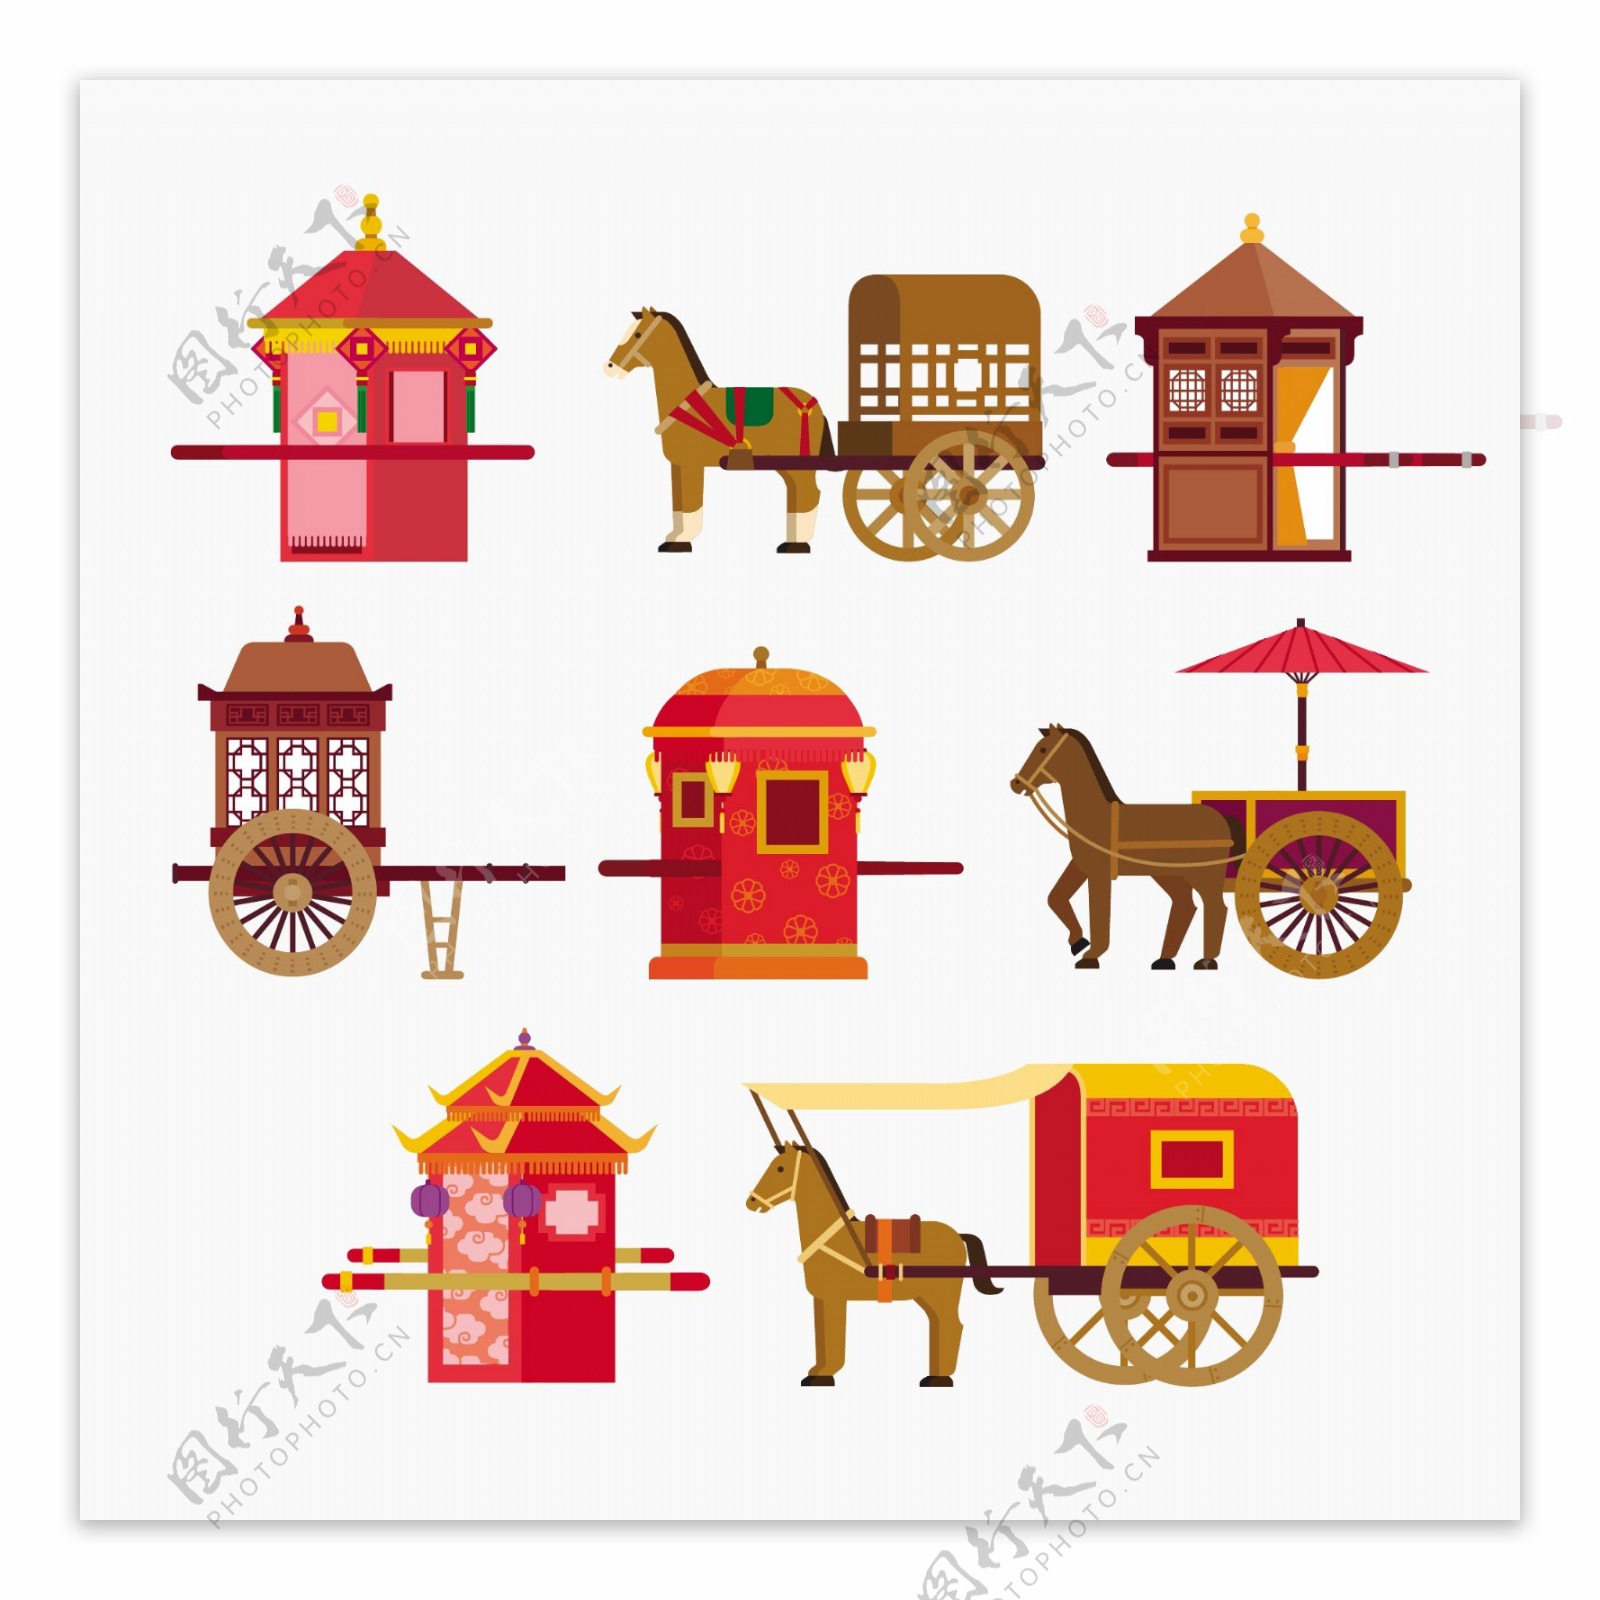 扁平化中国古代结婚建筑房屋矢量素材